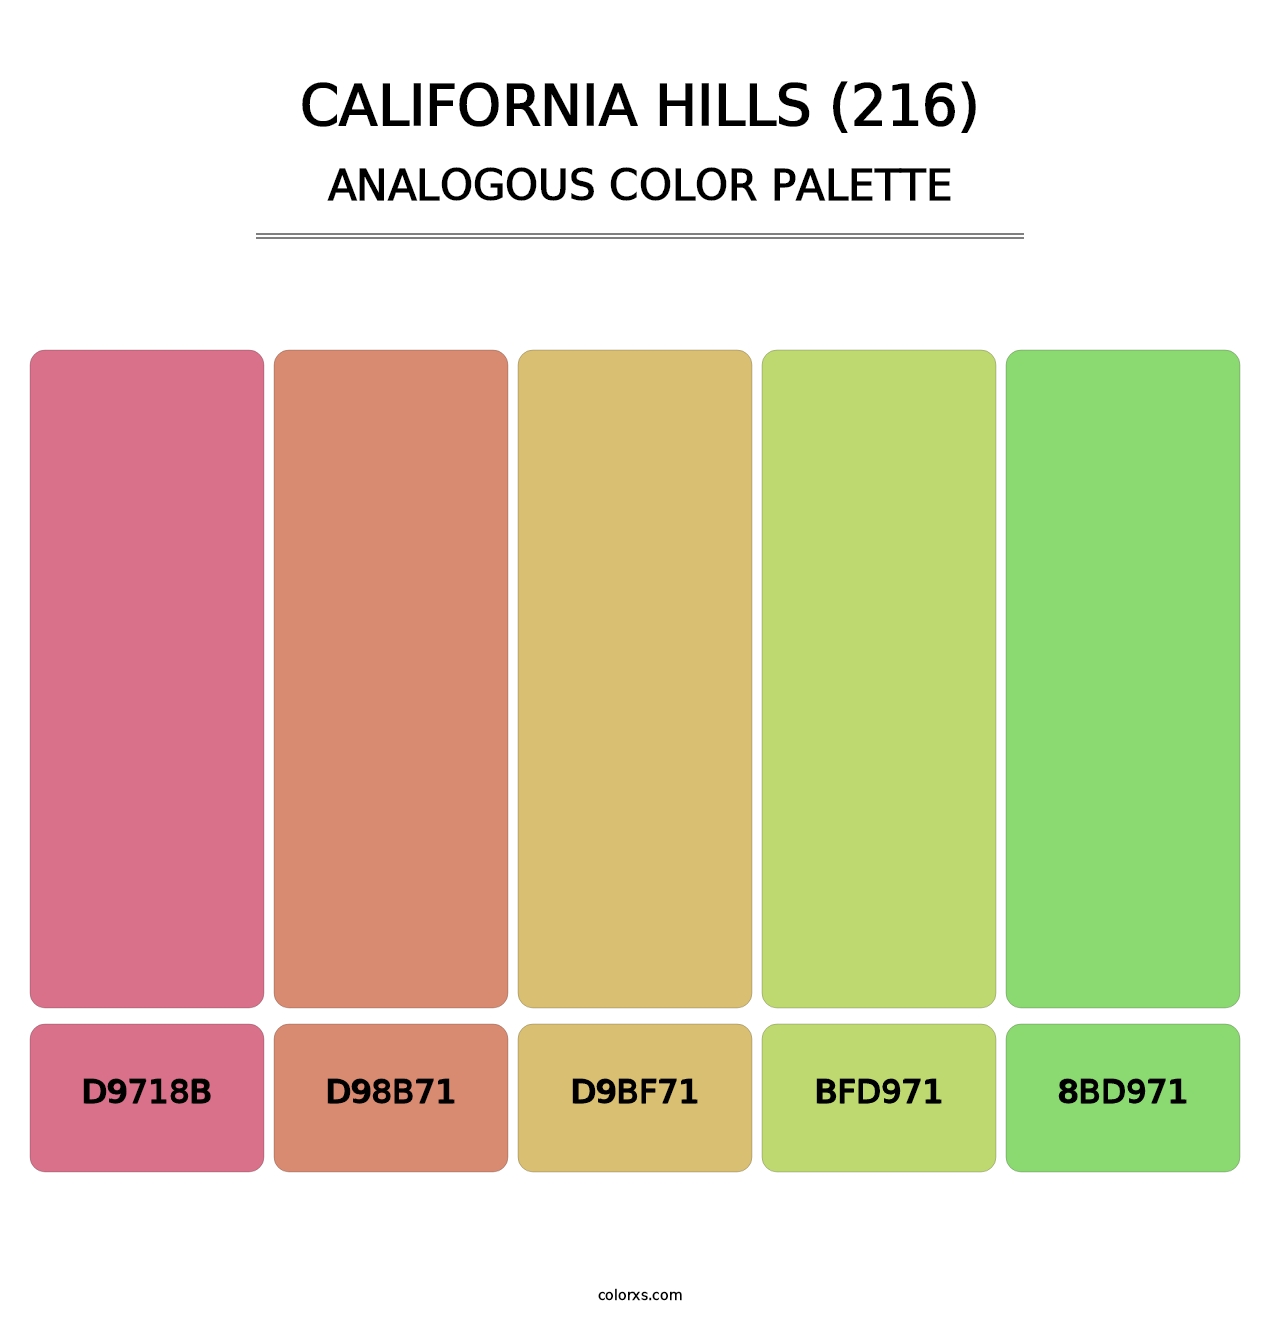 California Hills (216) - Analogous Color Palette